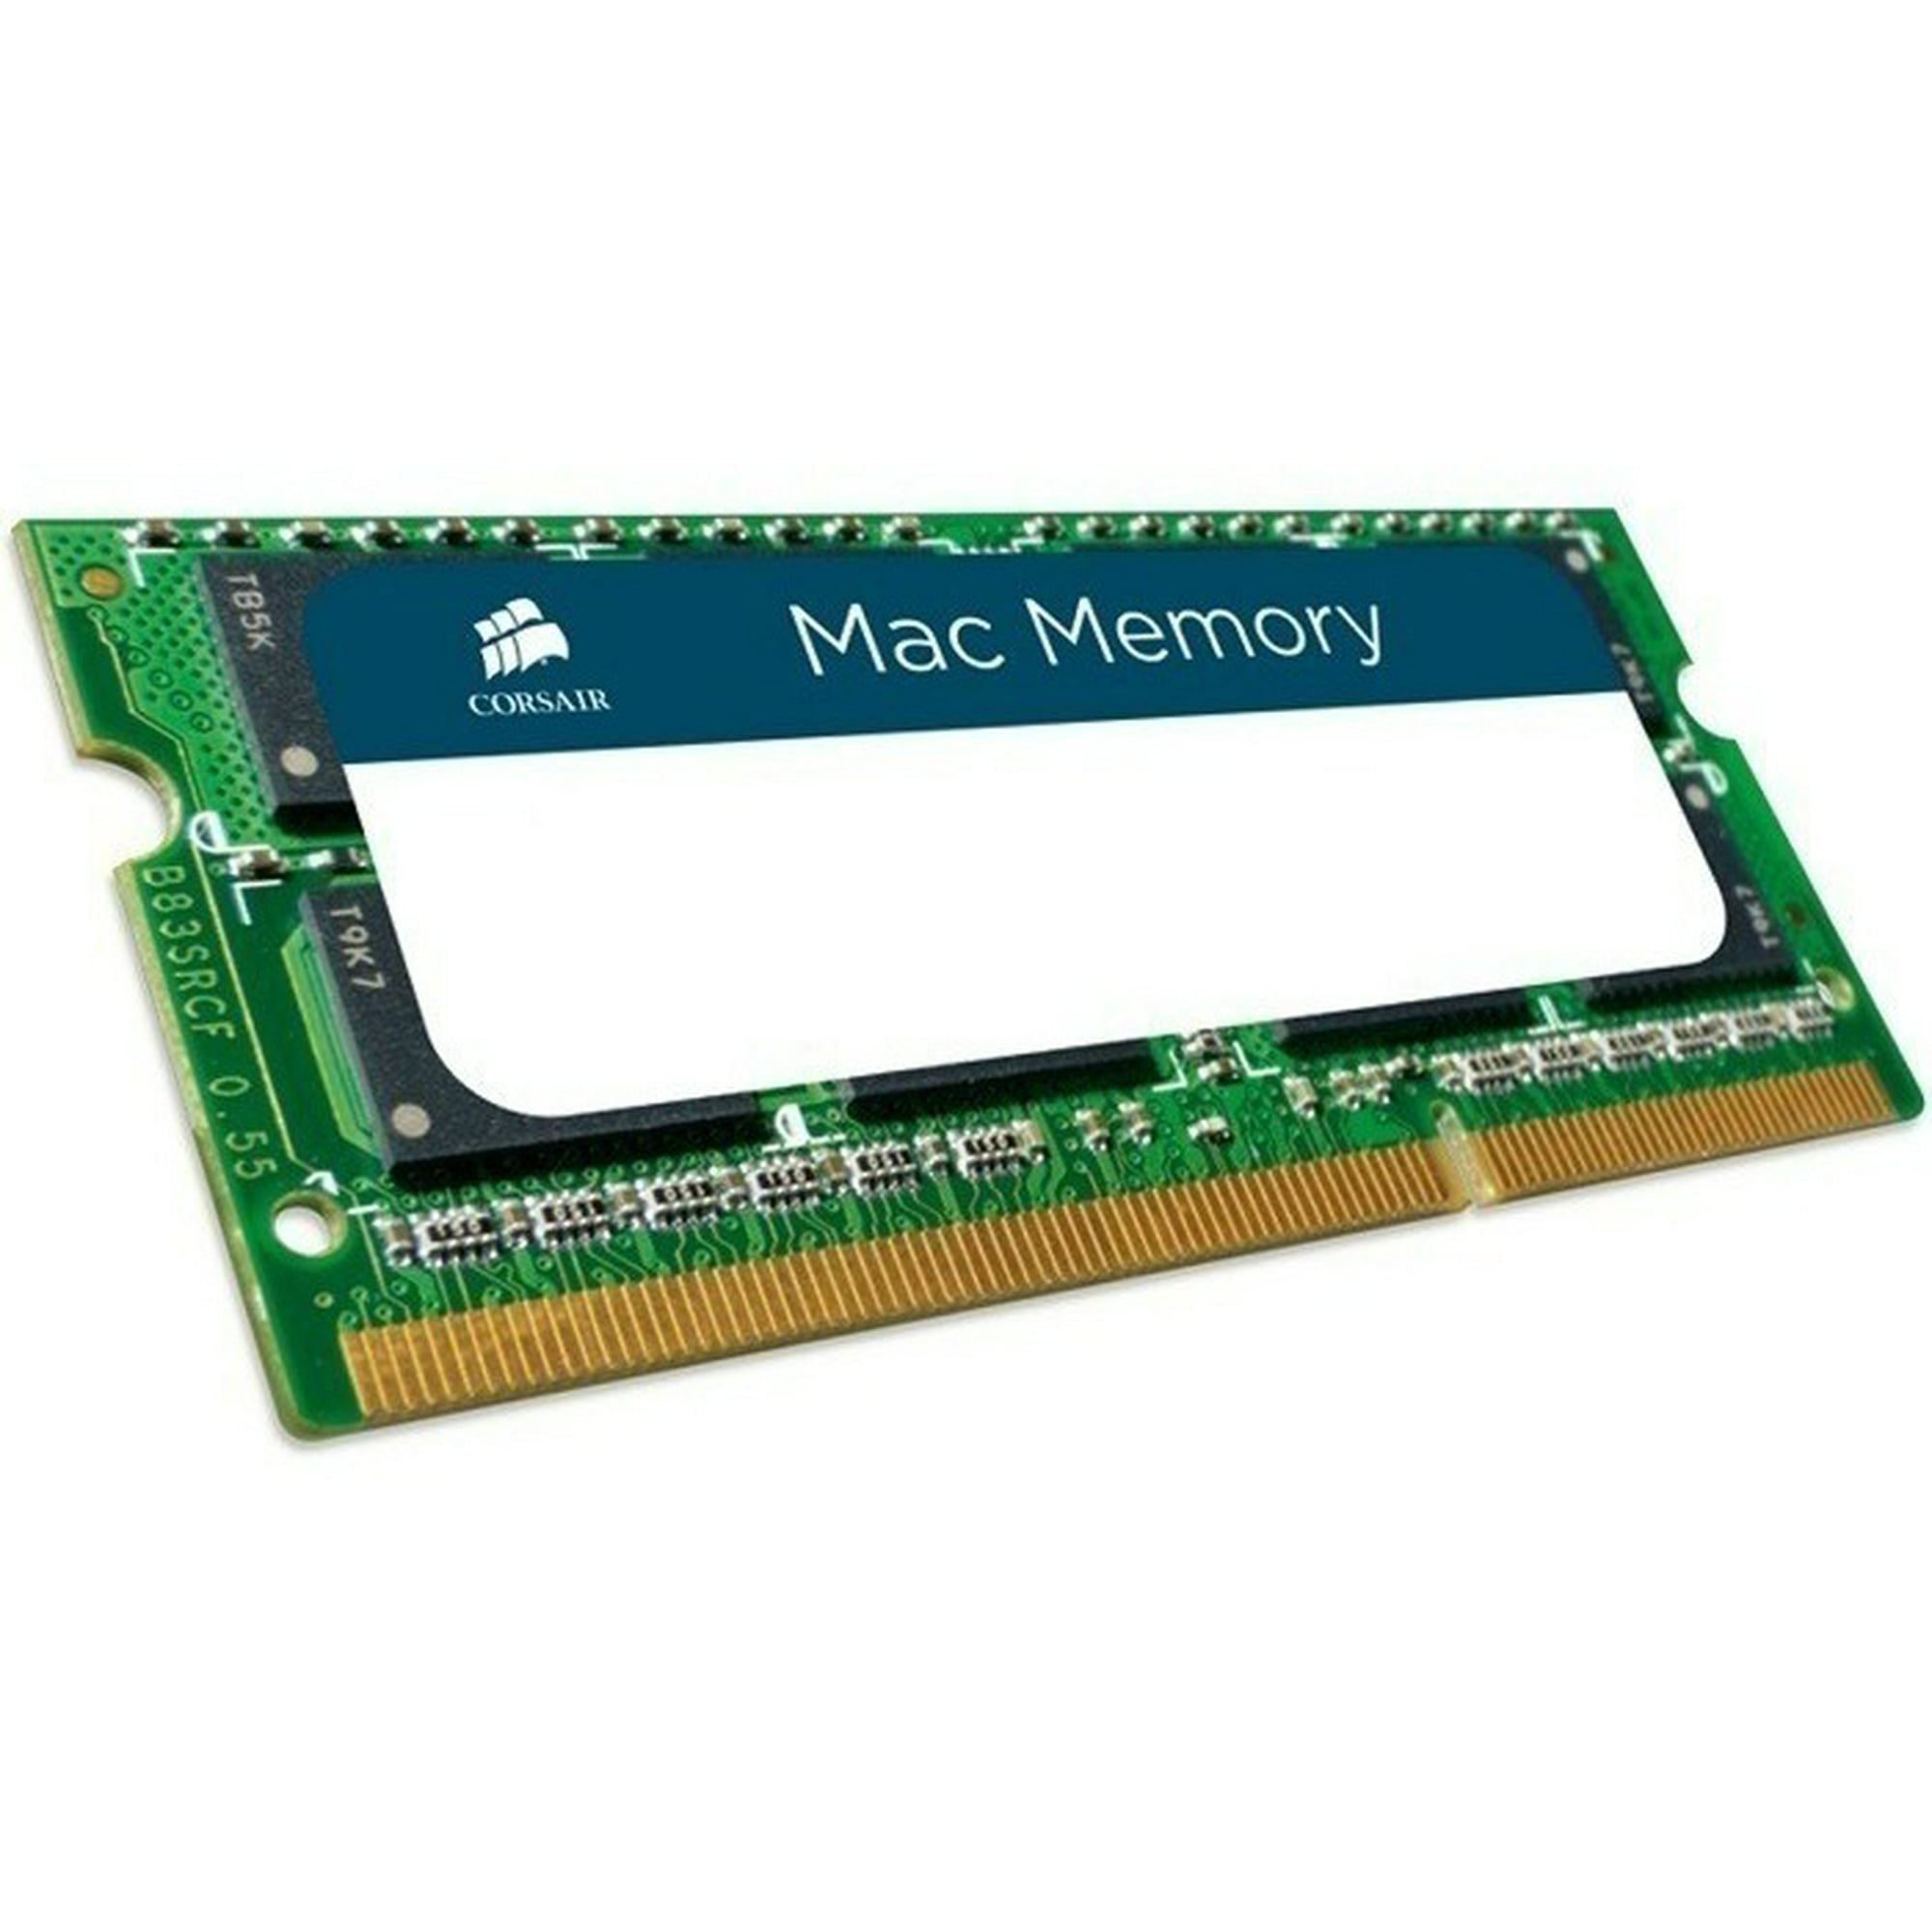 Memoria ram ddr3 sodimm corsair 8 gb 1600 mhz apple para mac corsair memorias cmsa8gx3m1a1600c11